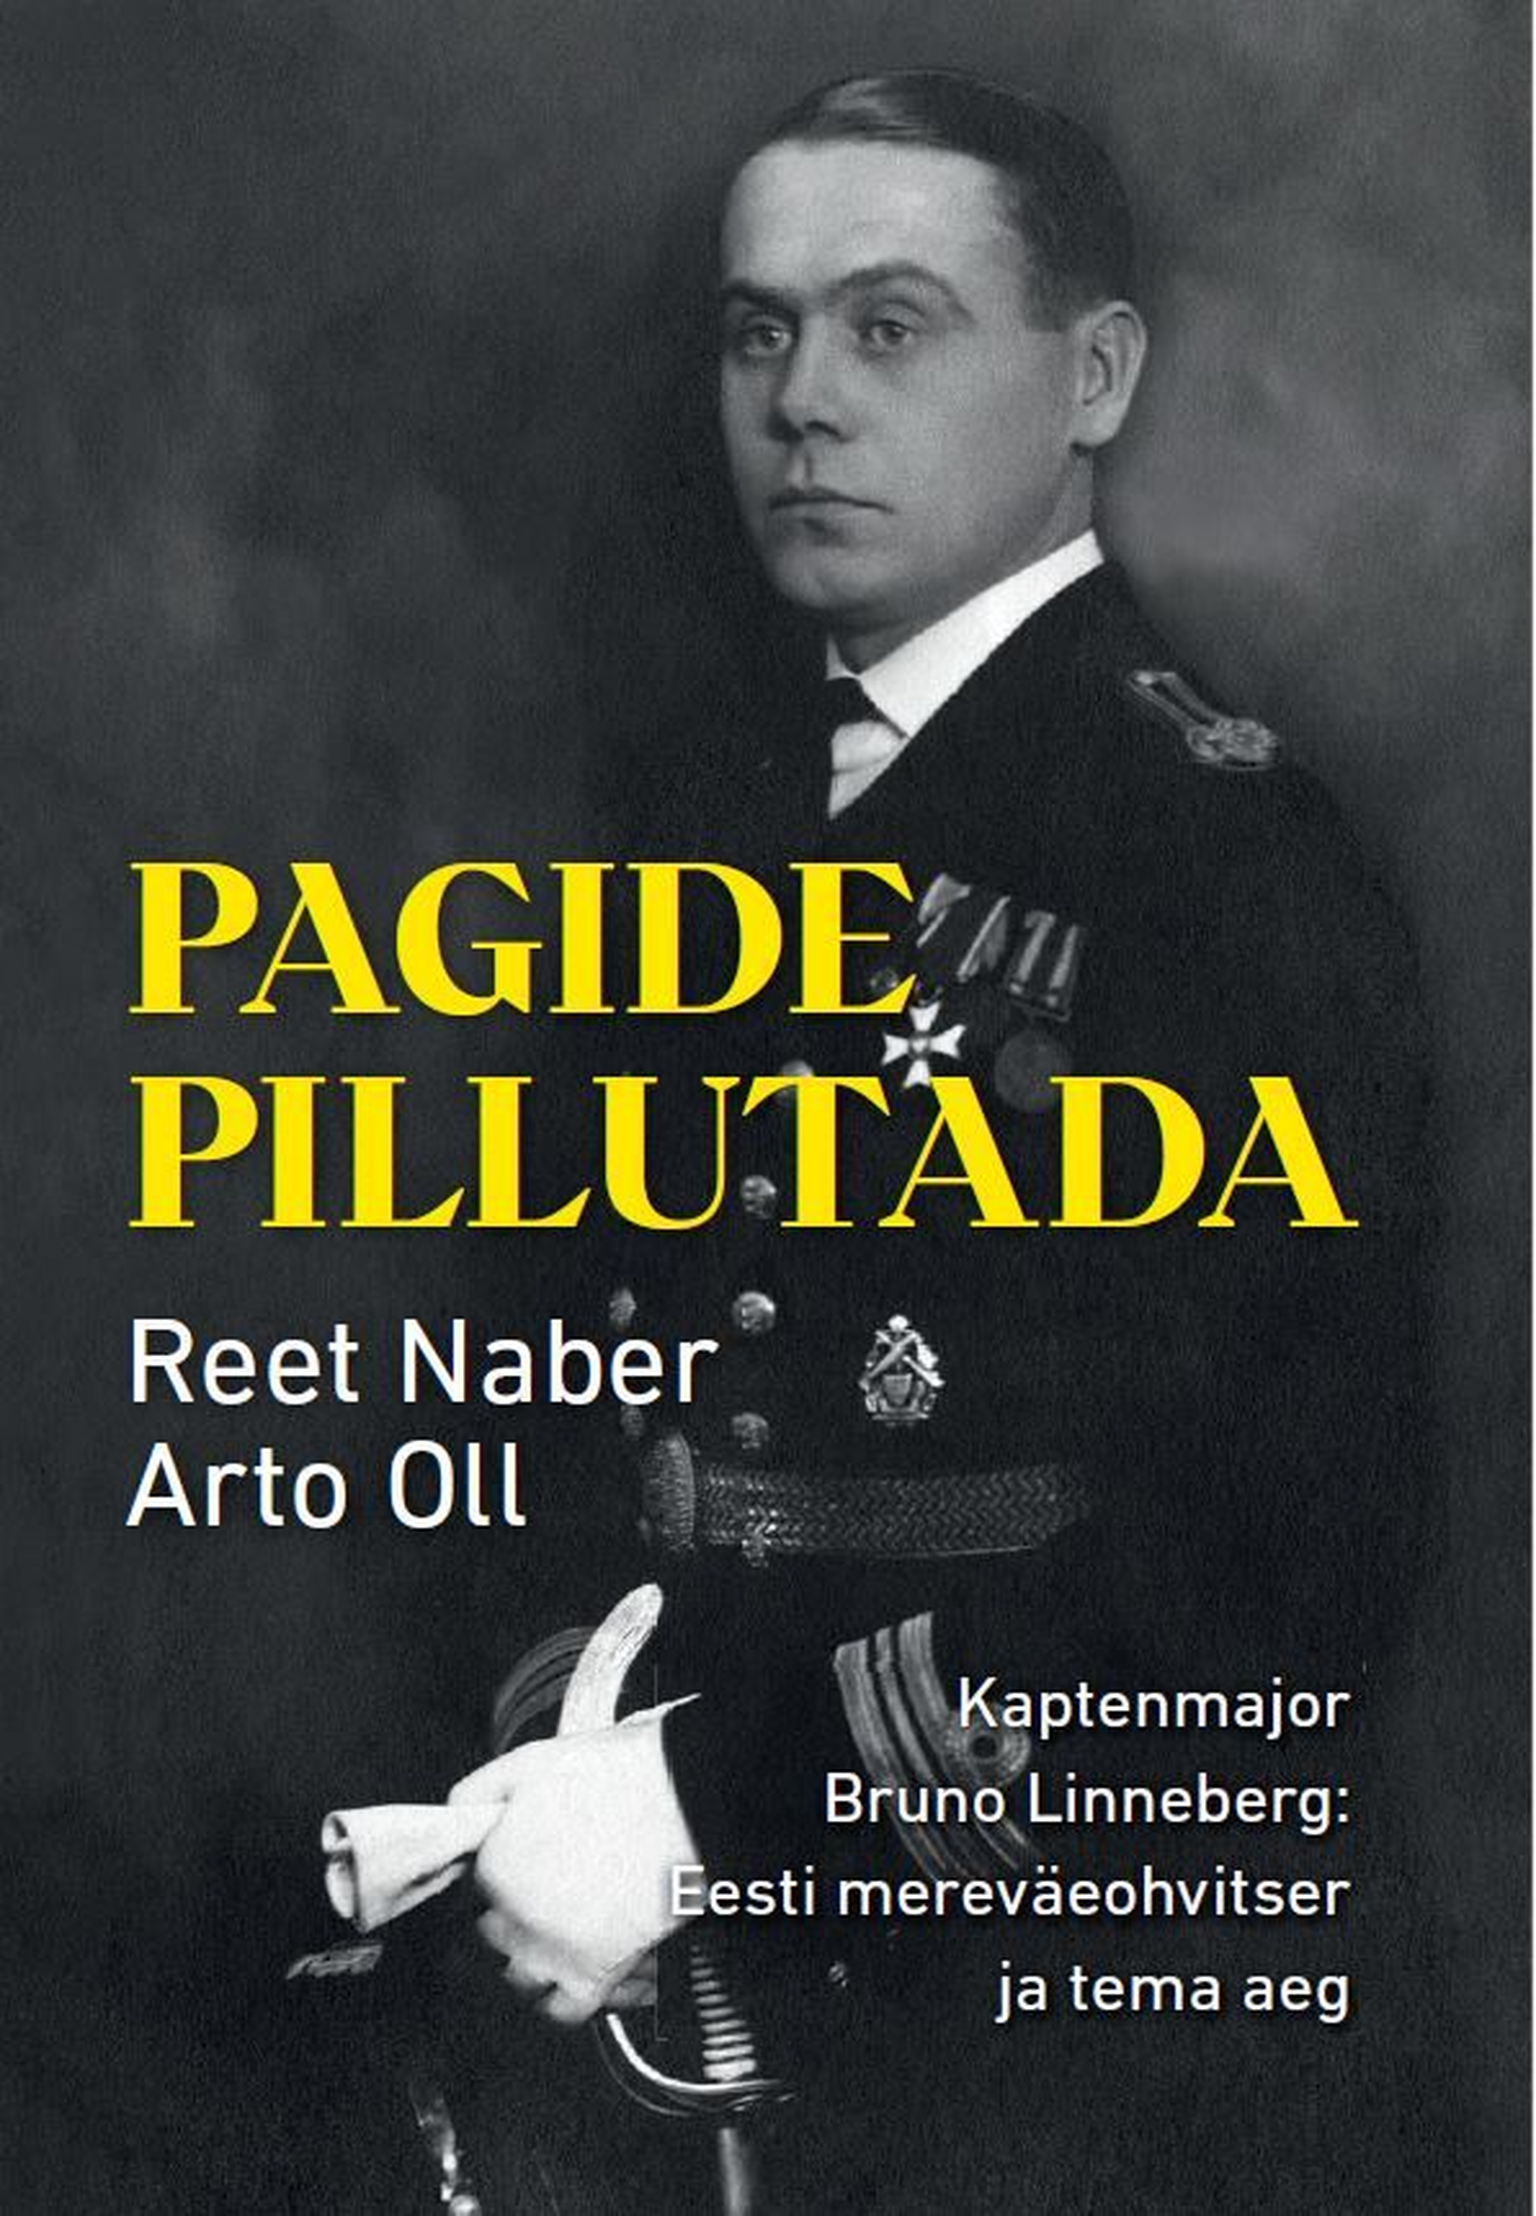 Reet Naber ja Arto Oll, «Pagide pillutada. Kaptenmajor Bruno Linneberg: Eesti mereväeohvitser ja tema aeg».